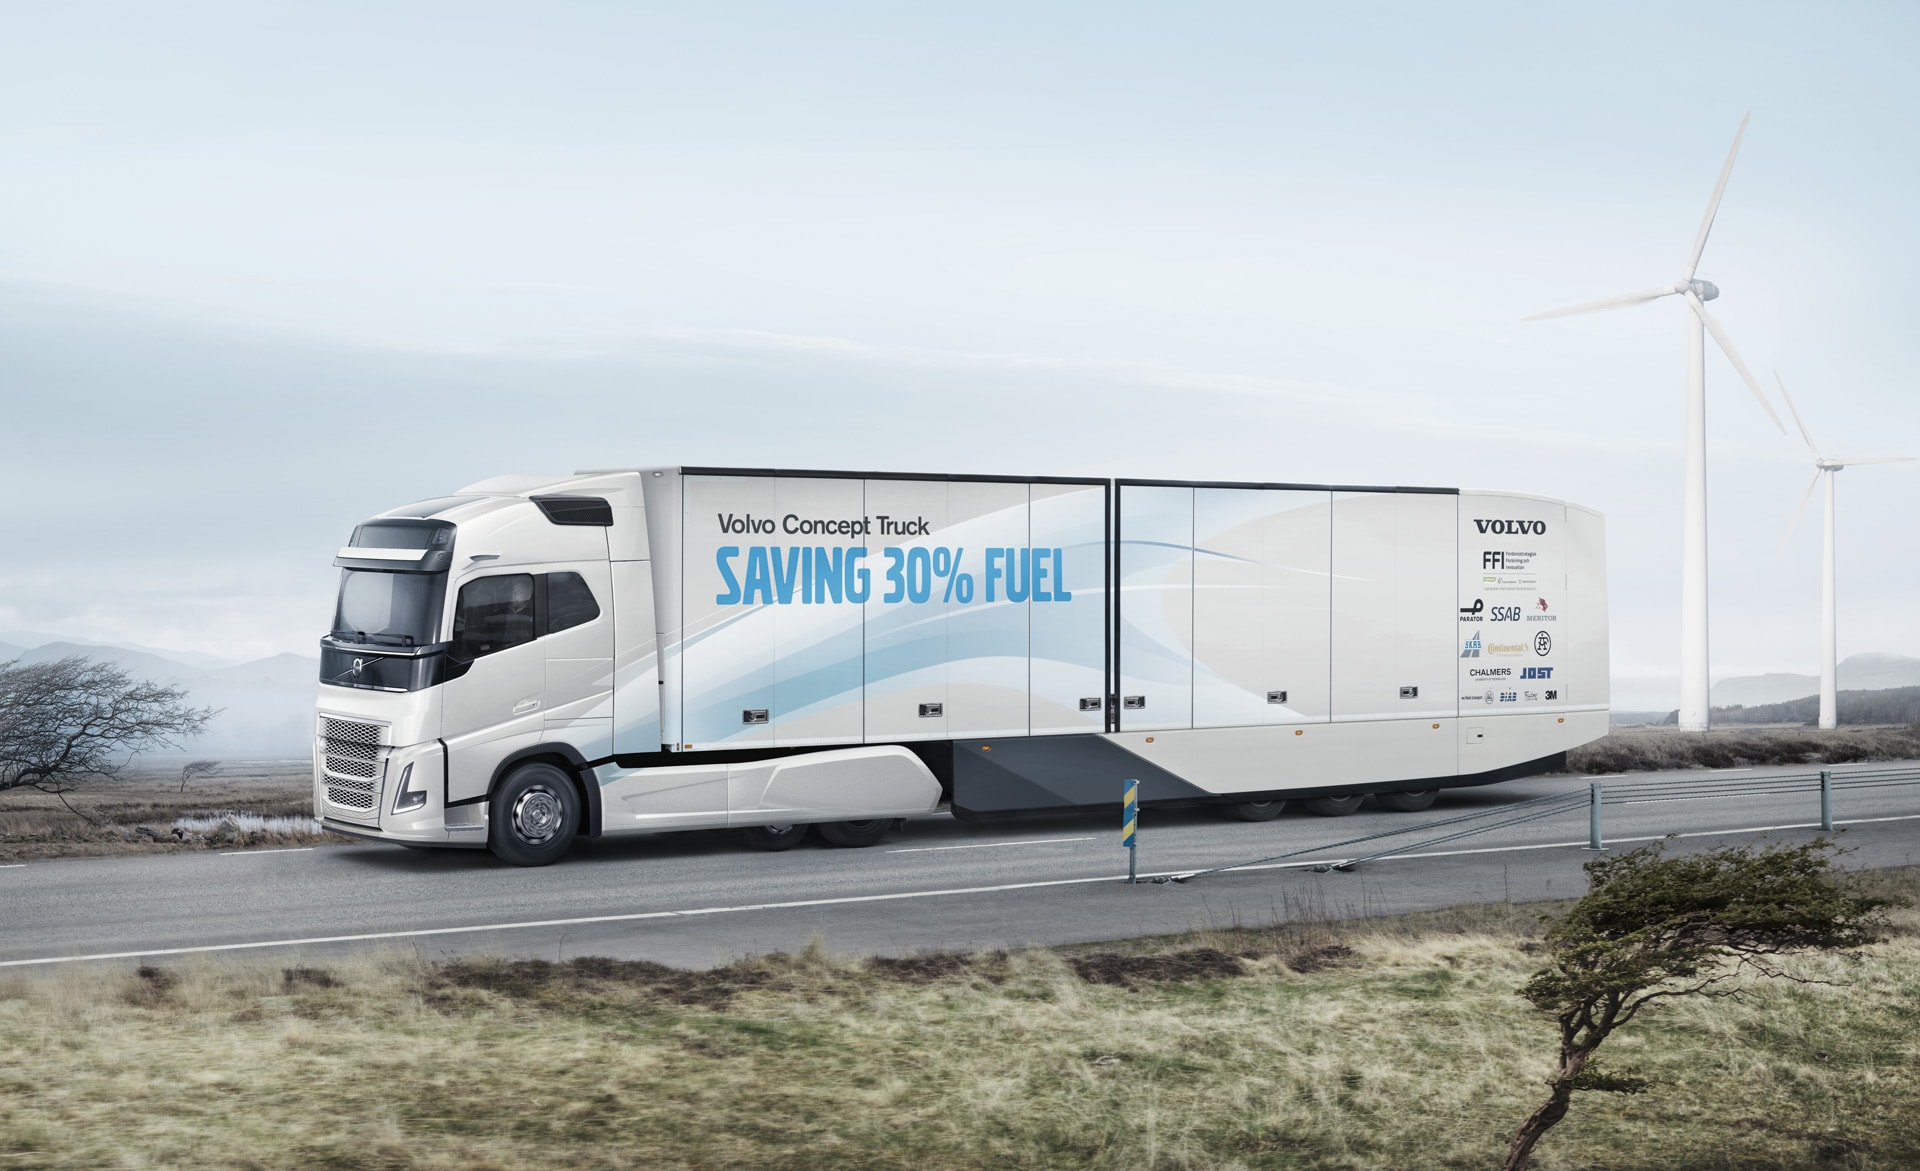 Resultado de imagen para Volvo Concept Truck